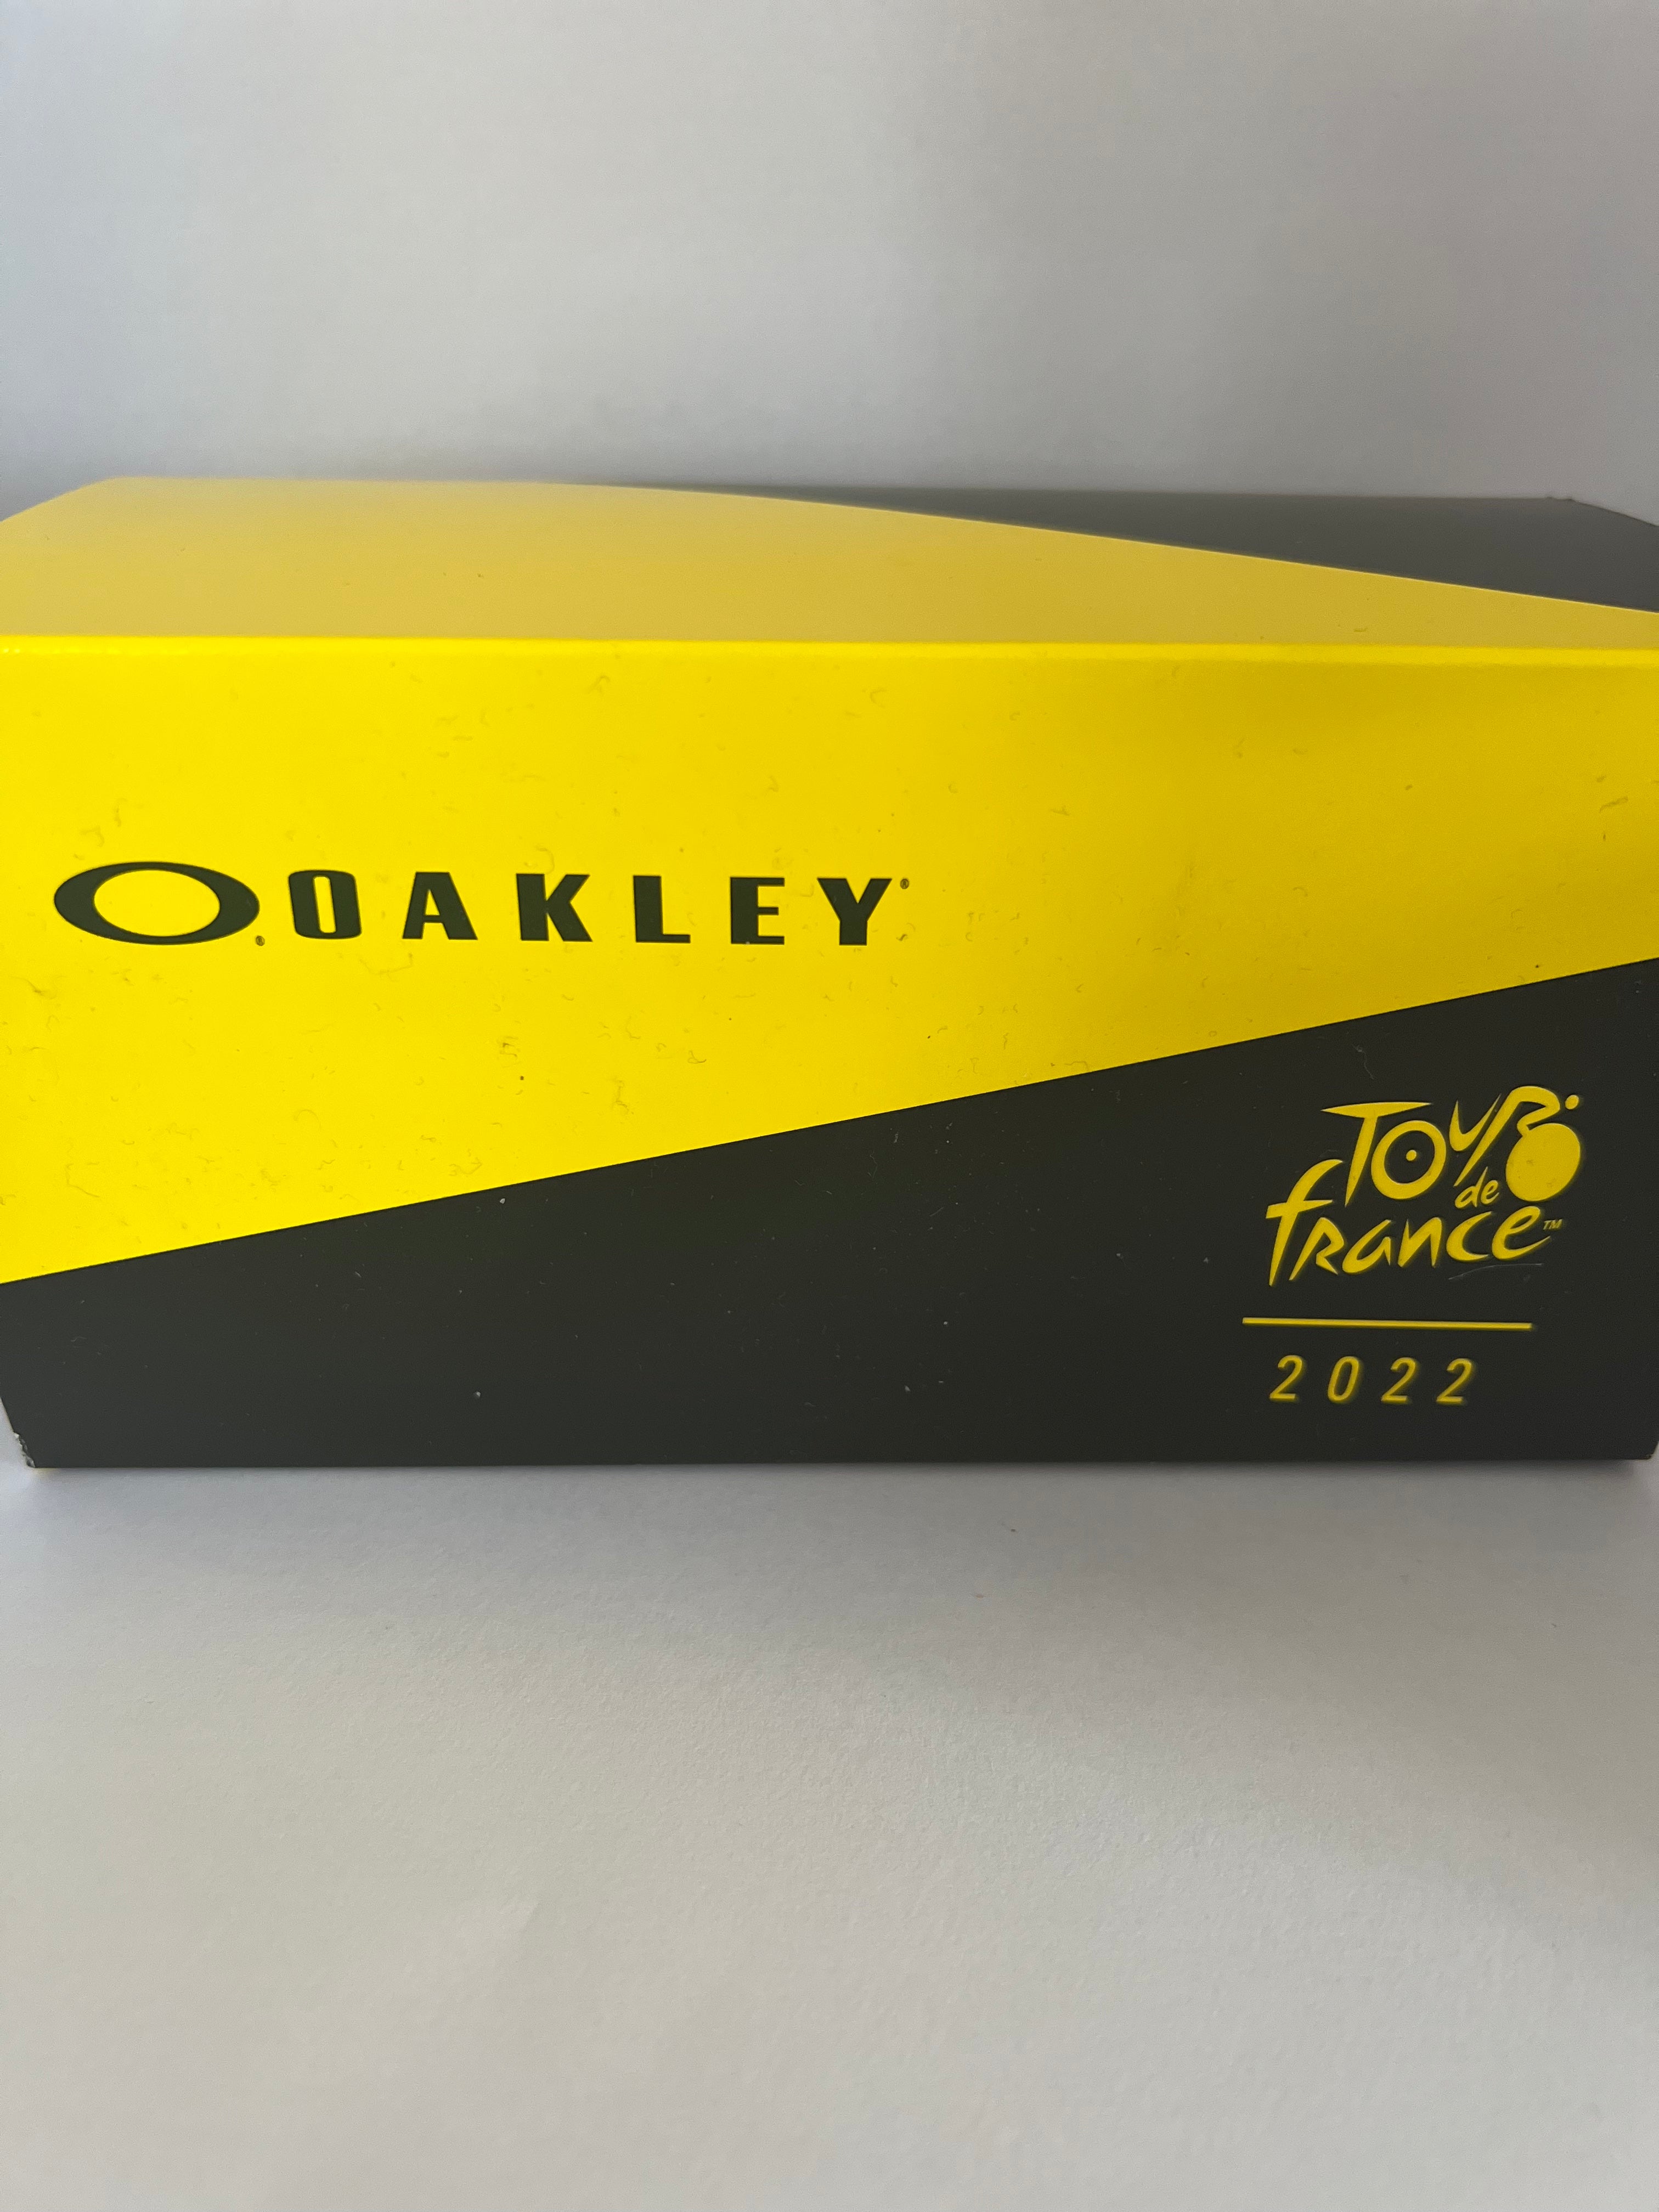 Oakley Sutro Lite Edition Tour de France 22 with Prizm lens – MDS